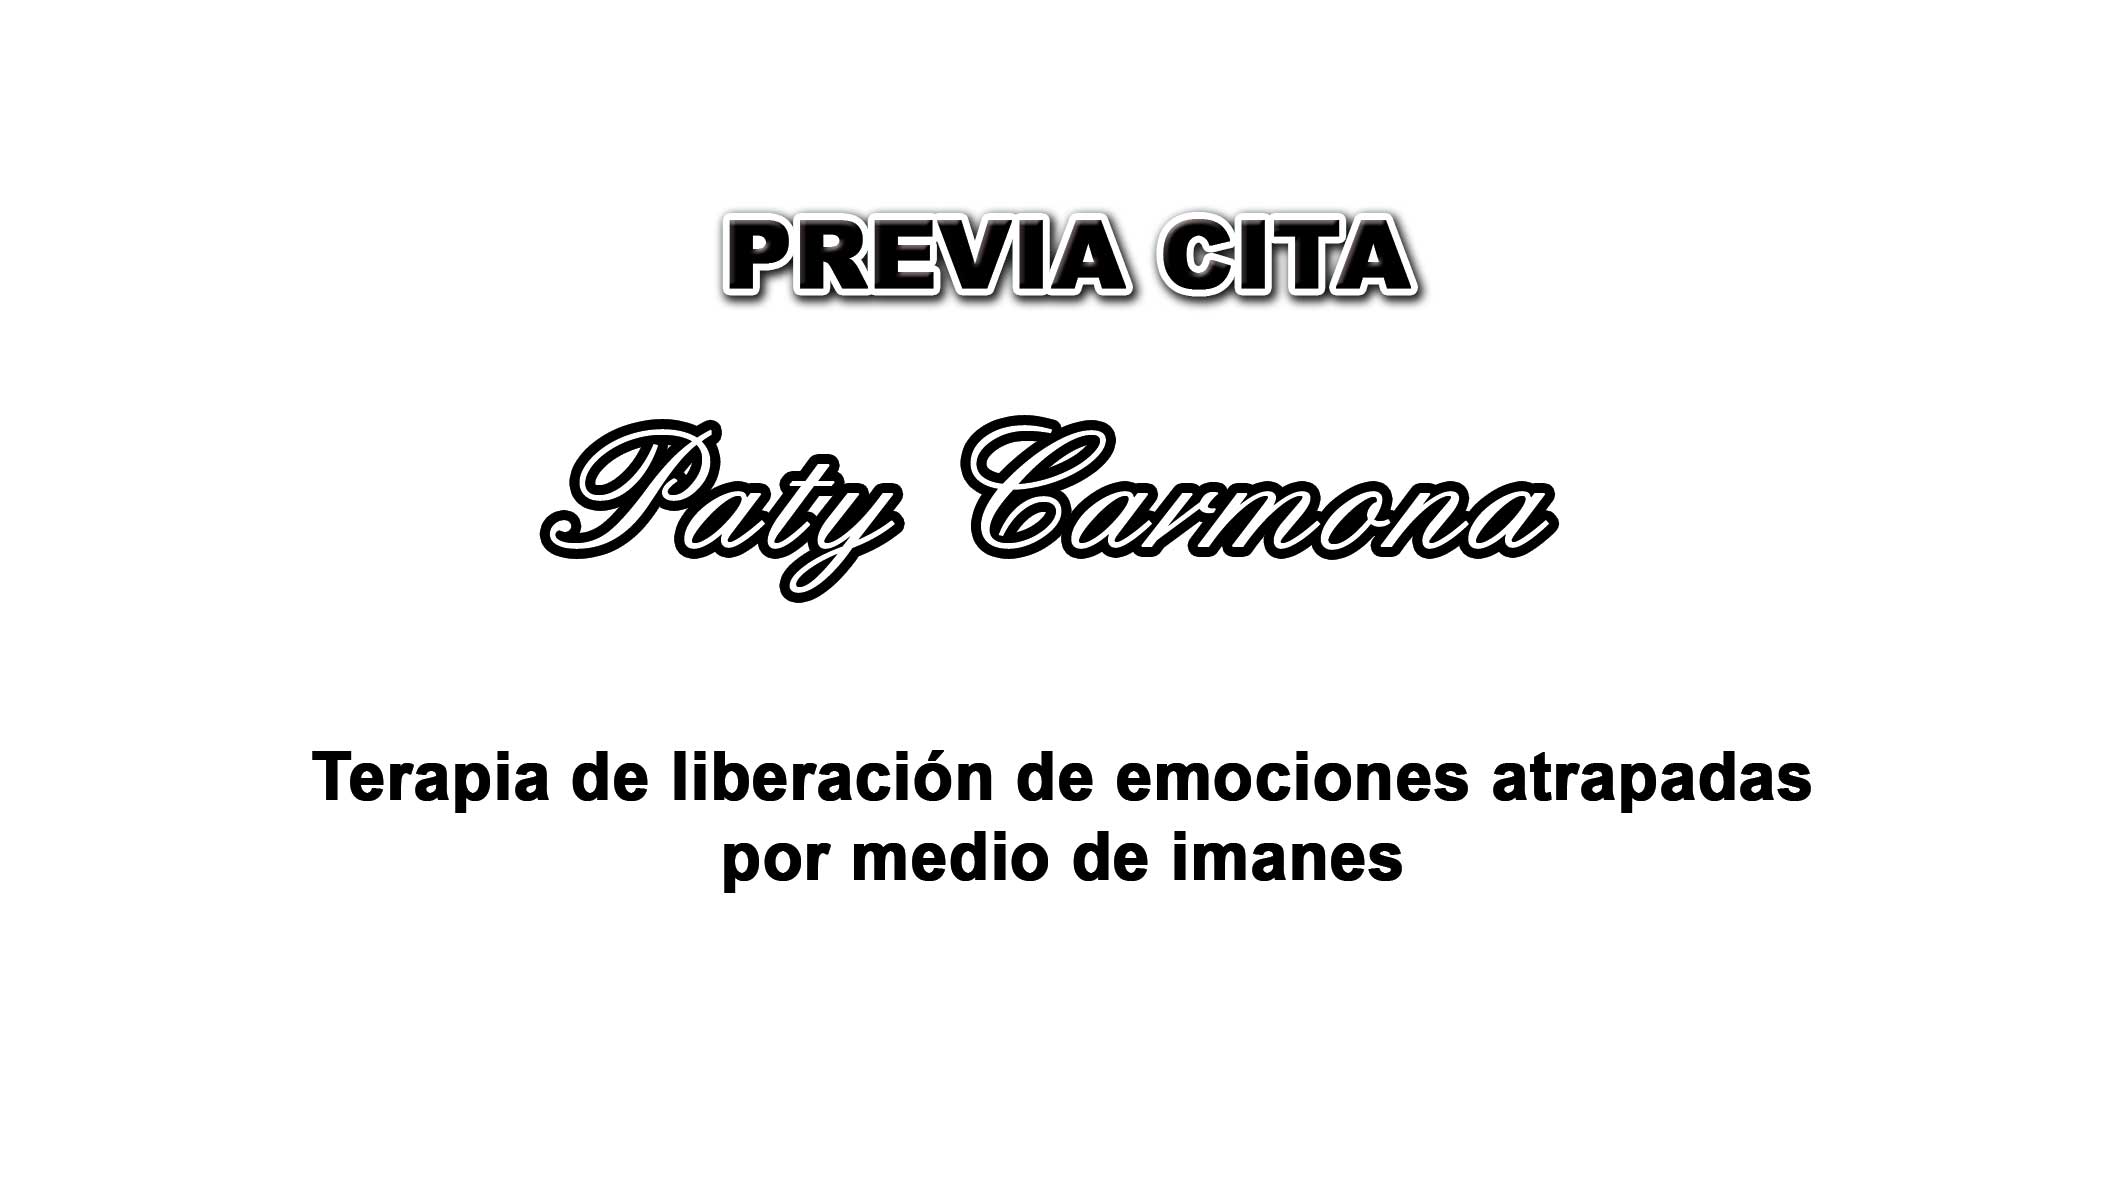 LECTURA DE CARTAS Y TAROT PATY CARMONA